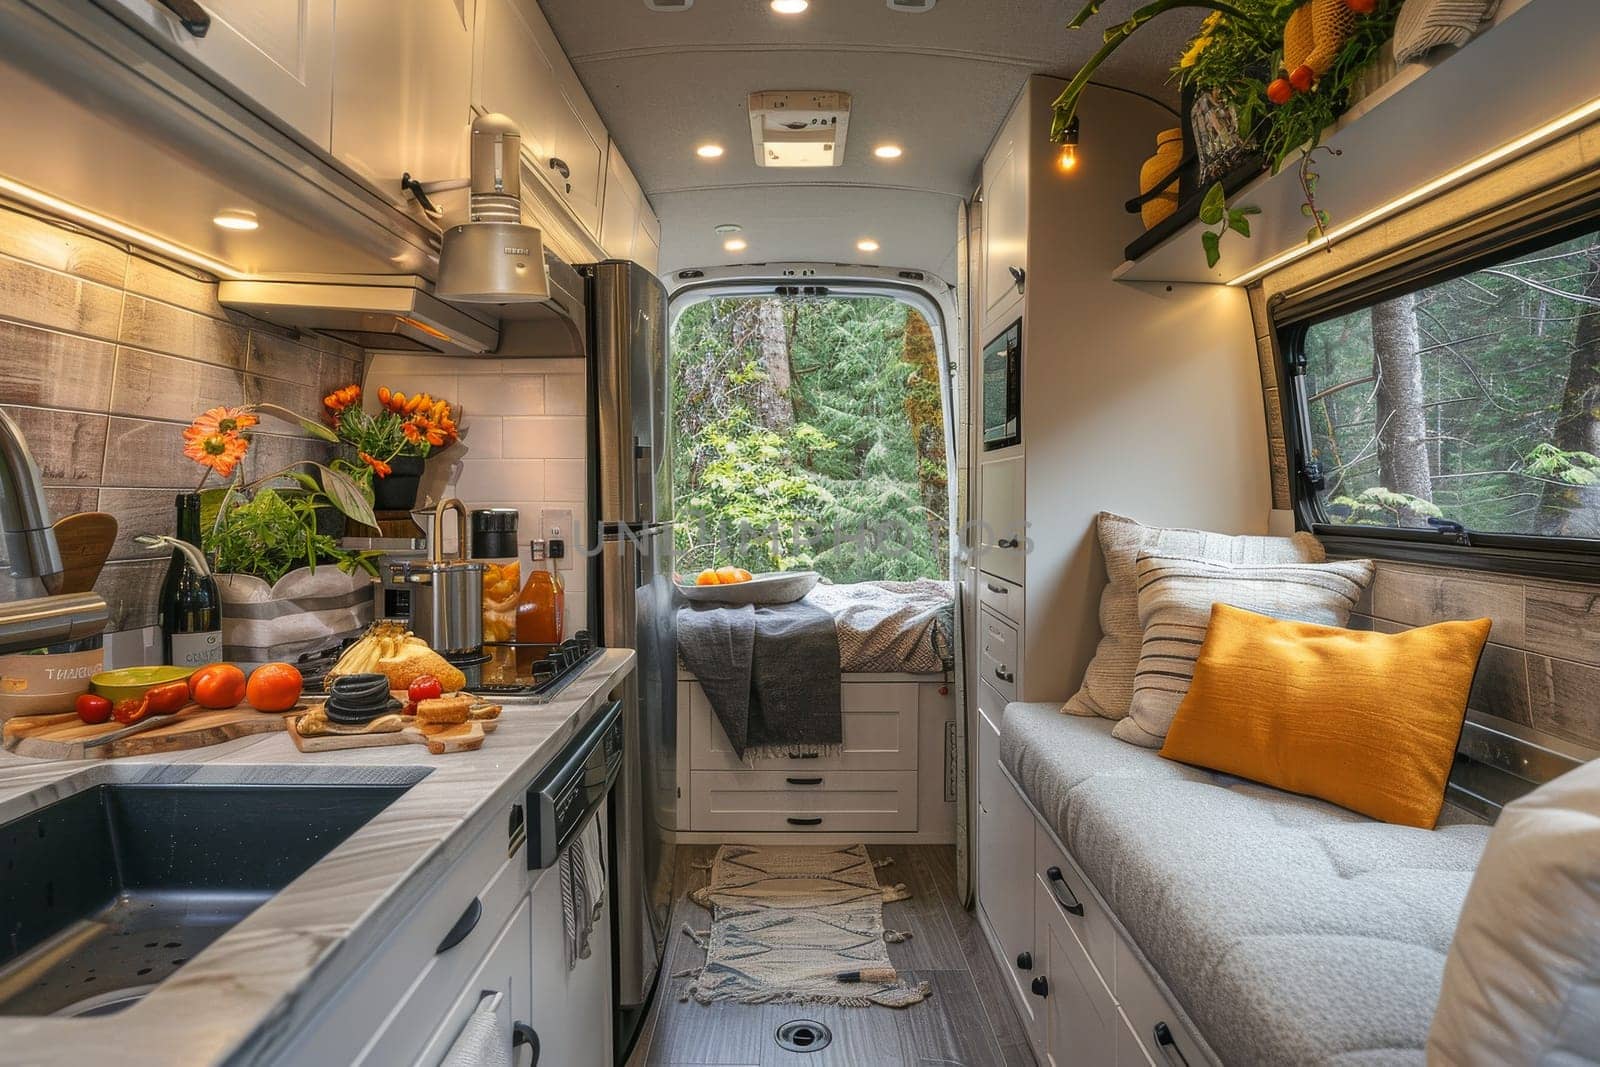 Kitchen inside a modern camper van. interior design.